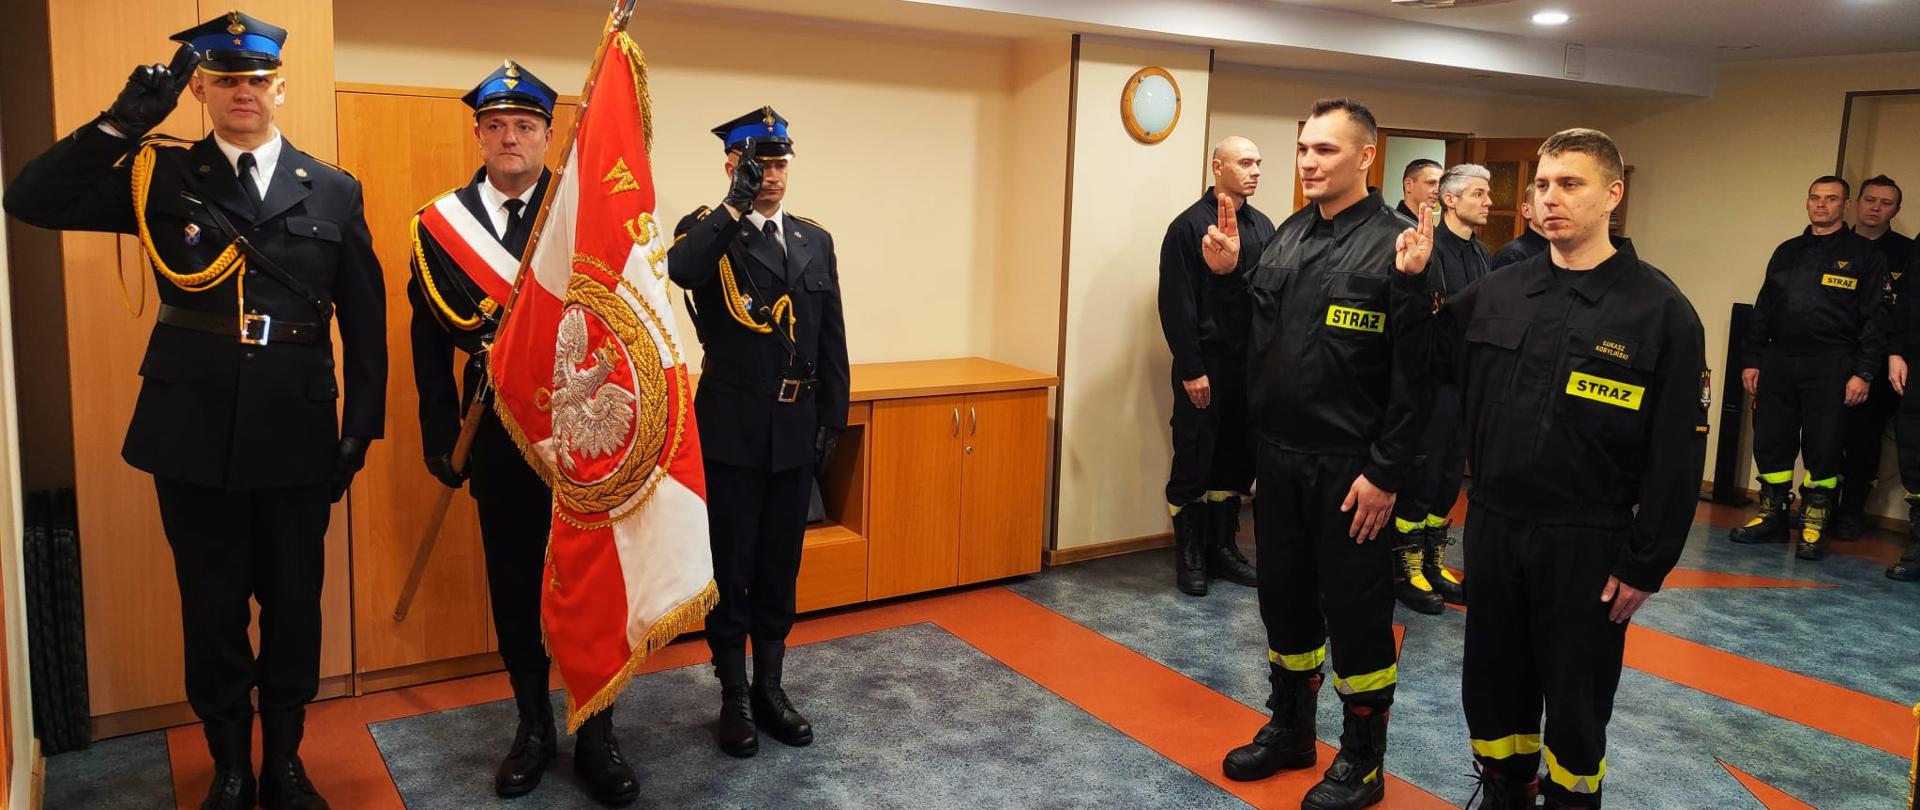 Zdjęcie zrobione w świetlicy remizy strażackiej. Z lewej strony stoi trzech strażaków w mundurach galowych ze sztandarem. Z prawej dwóch strażaków w mundurach koszarowych w trakcie ślubowania, uniesiona prawa ręka i złączone dwa palce. Za nimi reszta załogi.